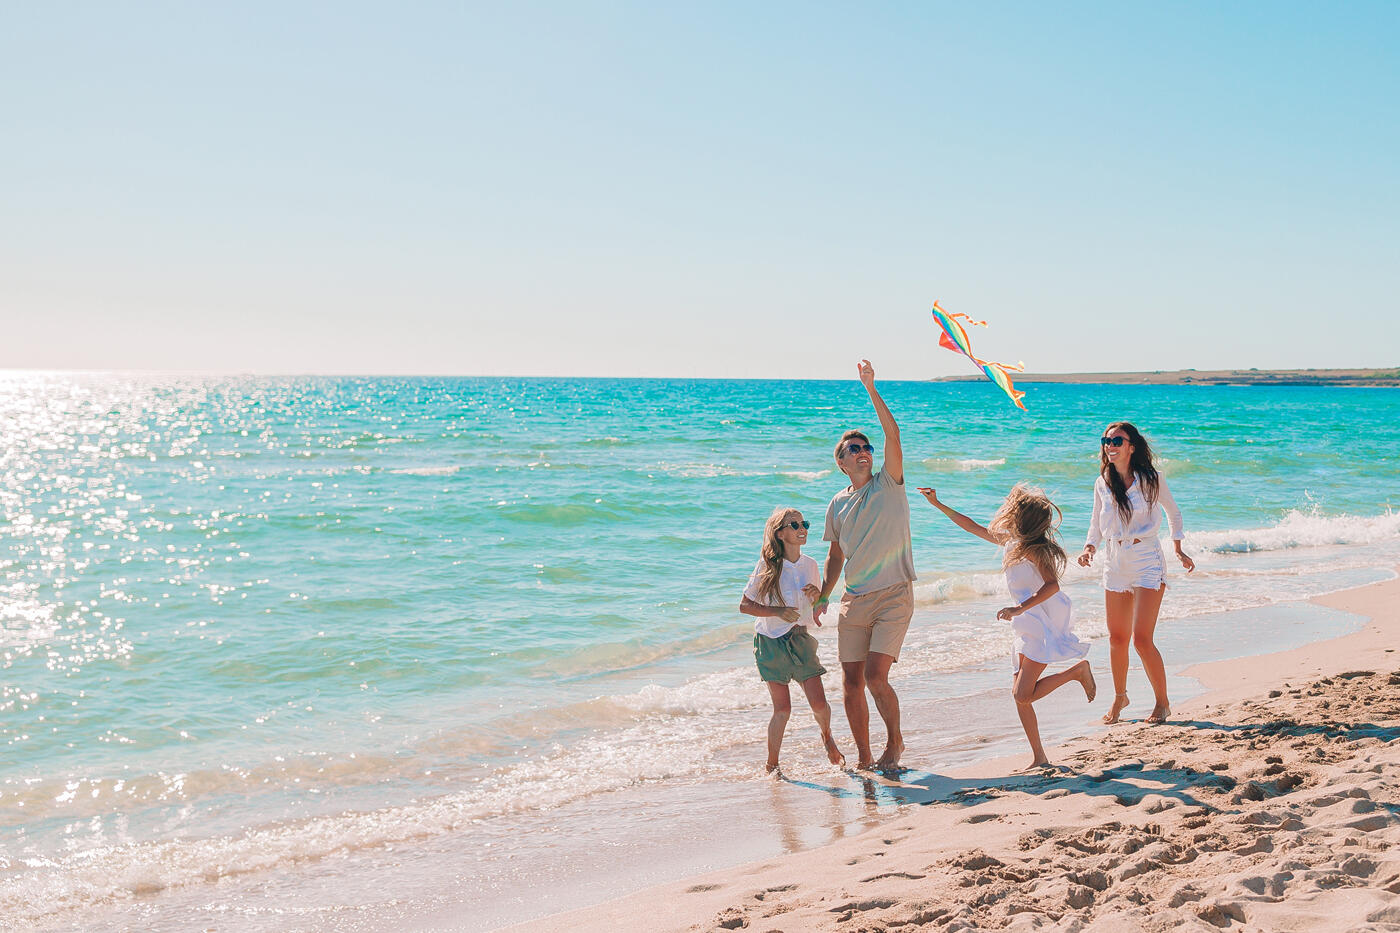 Familie, die mit einem Drachen an einem sonnigen Strand spielt, mit dem türkisfarbenen Meer im Hintergrund während ihres Urlaubs.